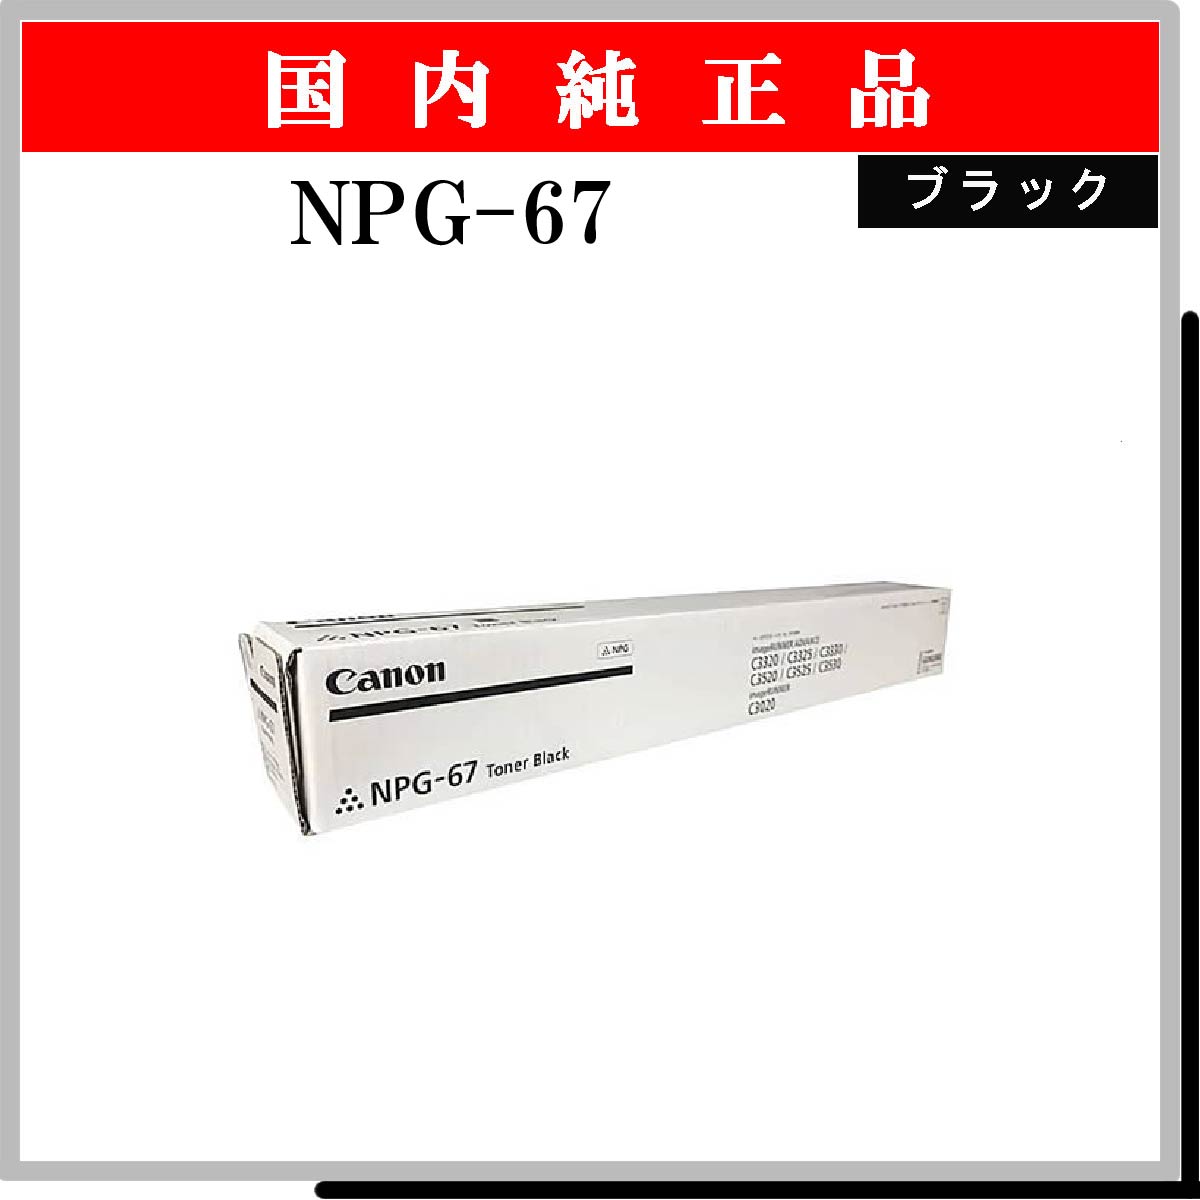 NPG-67 ﾌﾞﾗｯｸ 純正